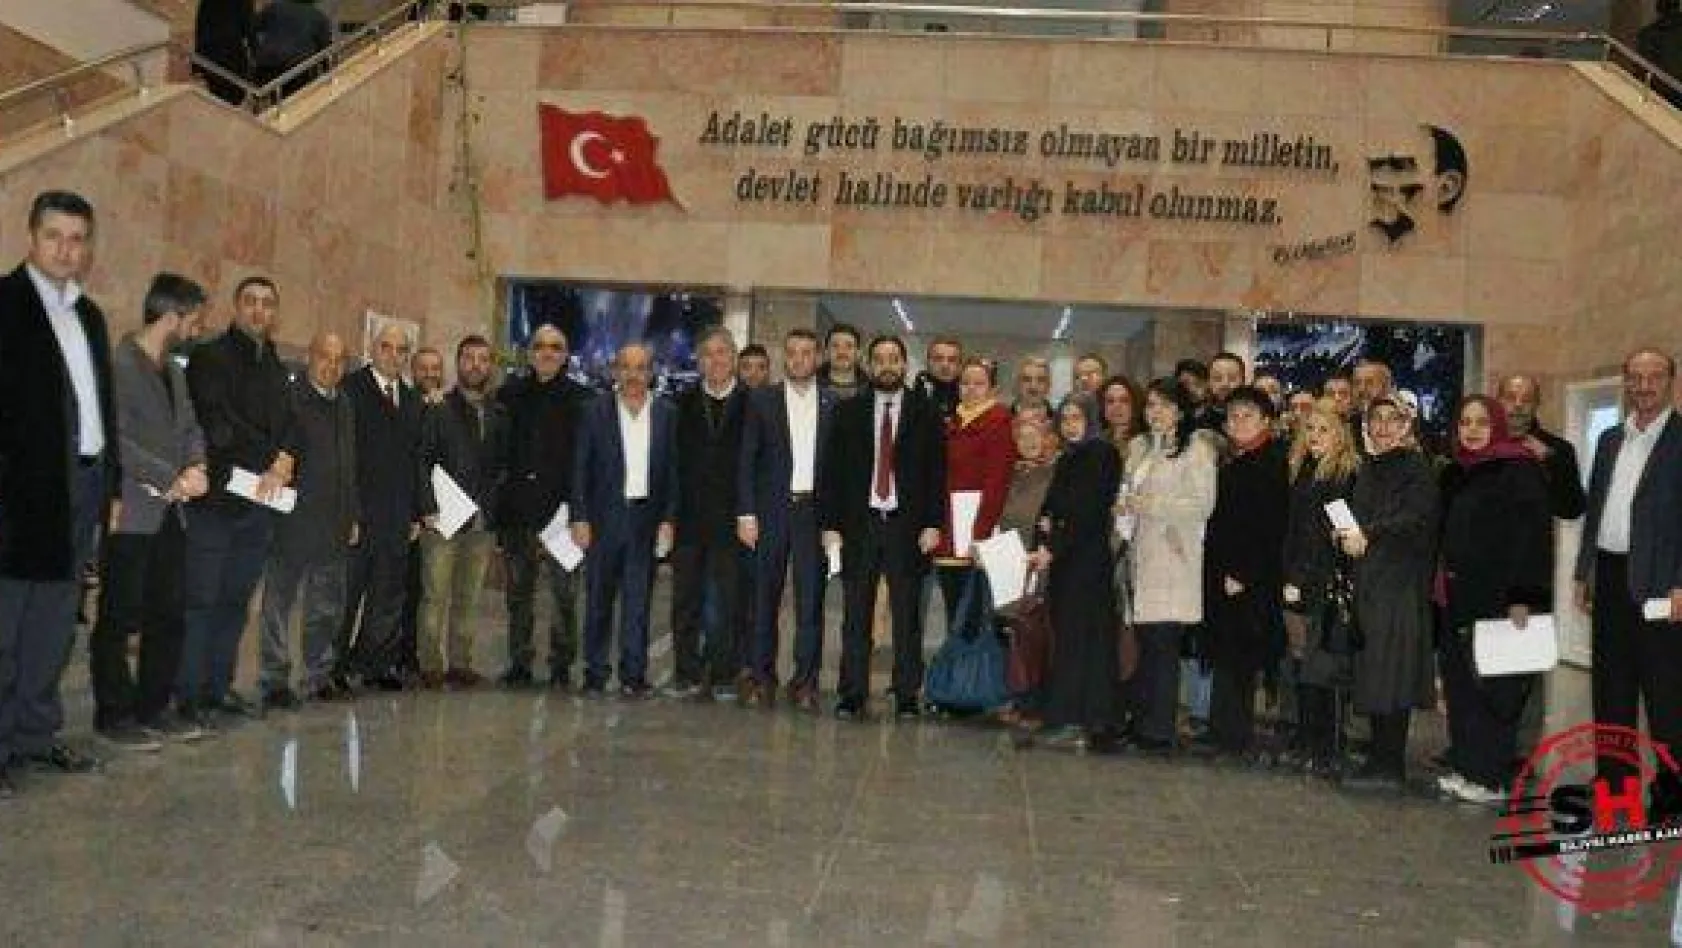 Kemal Kılıçdaroğlu'na suç duyurusu